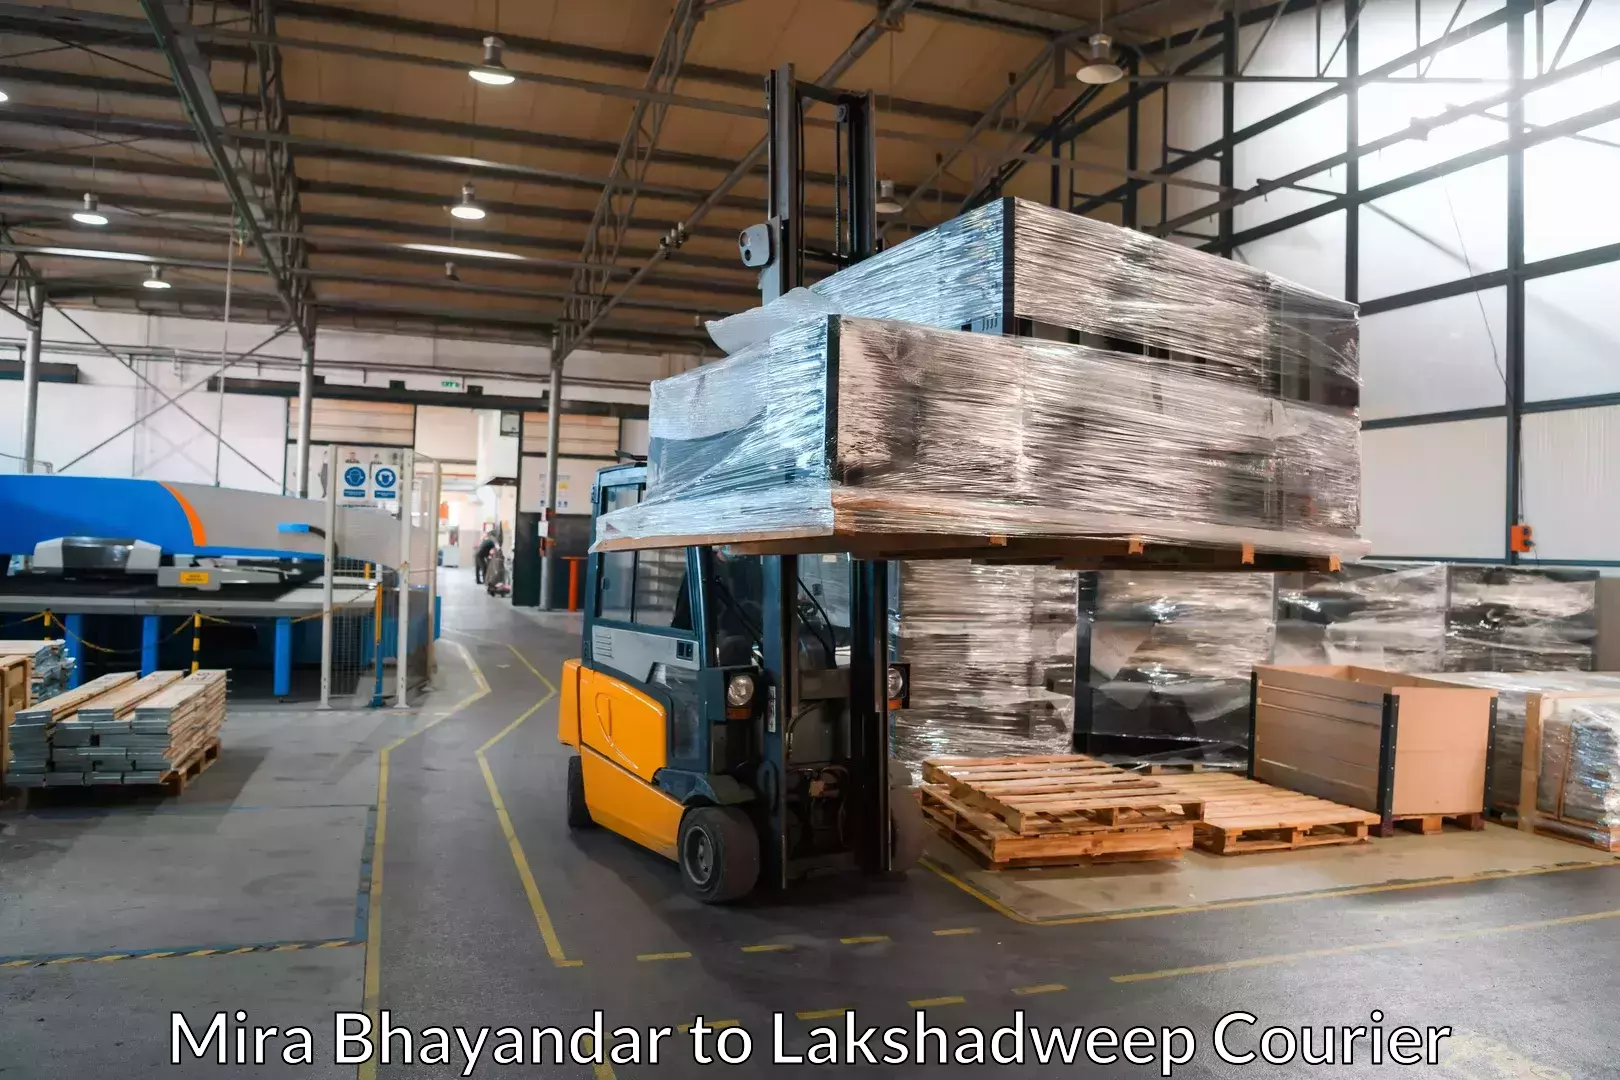 Furniture transport experts Mira Bhayandar to Lakshadweep